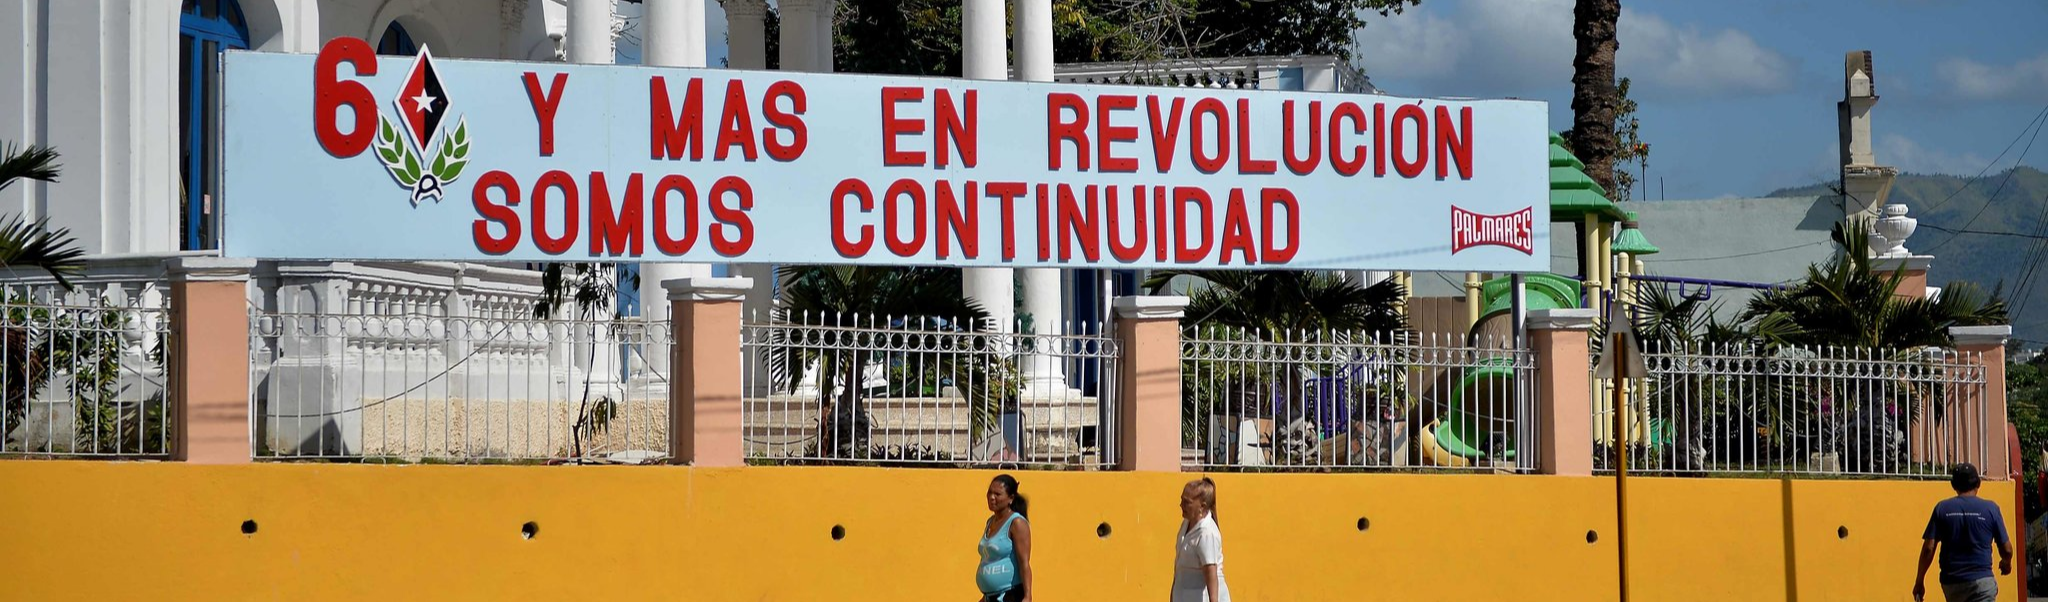 A nova Constituição de Cuba e as razões para sua aprovação neste domingo (24)